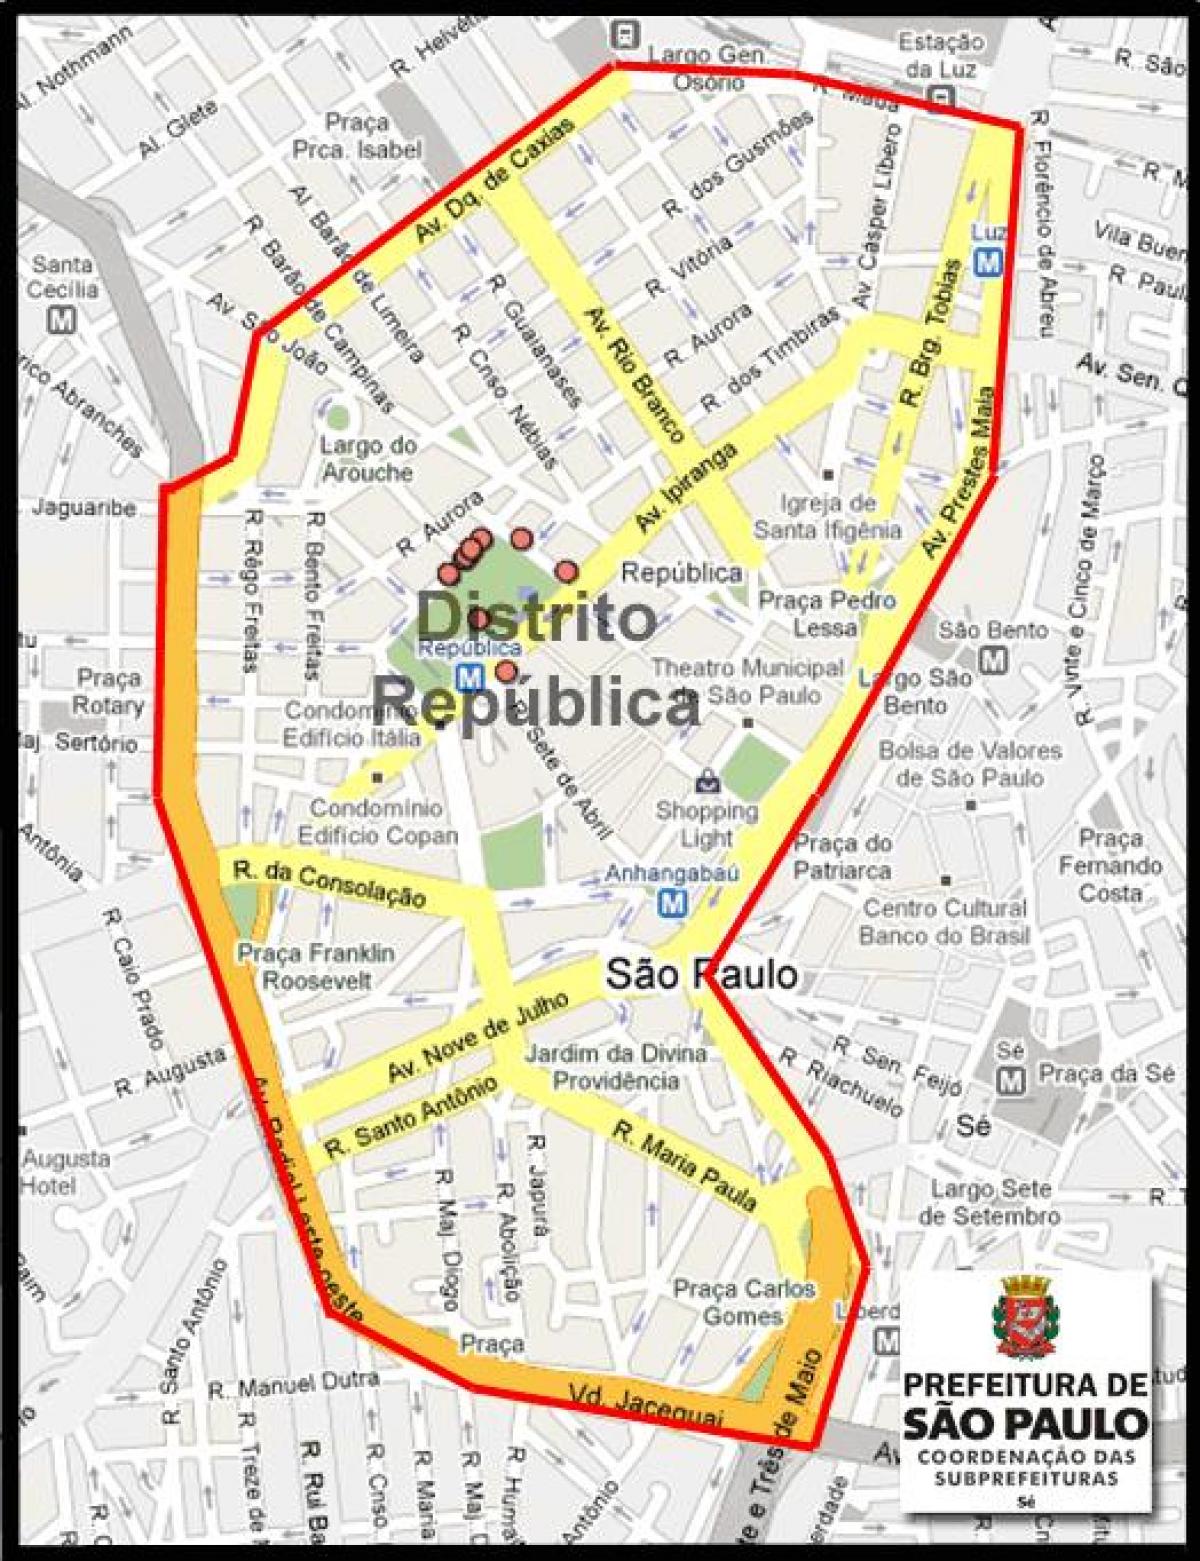 মানচিত্র República সাও পাওলো